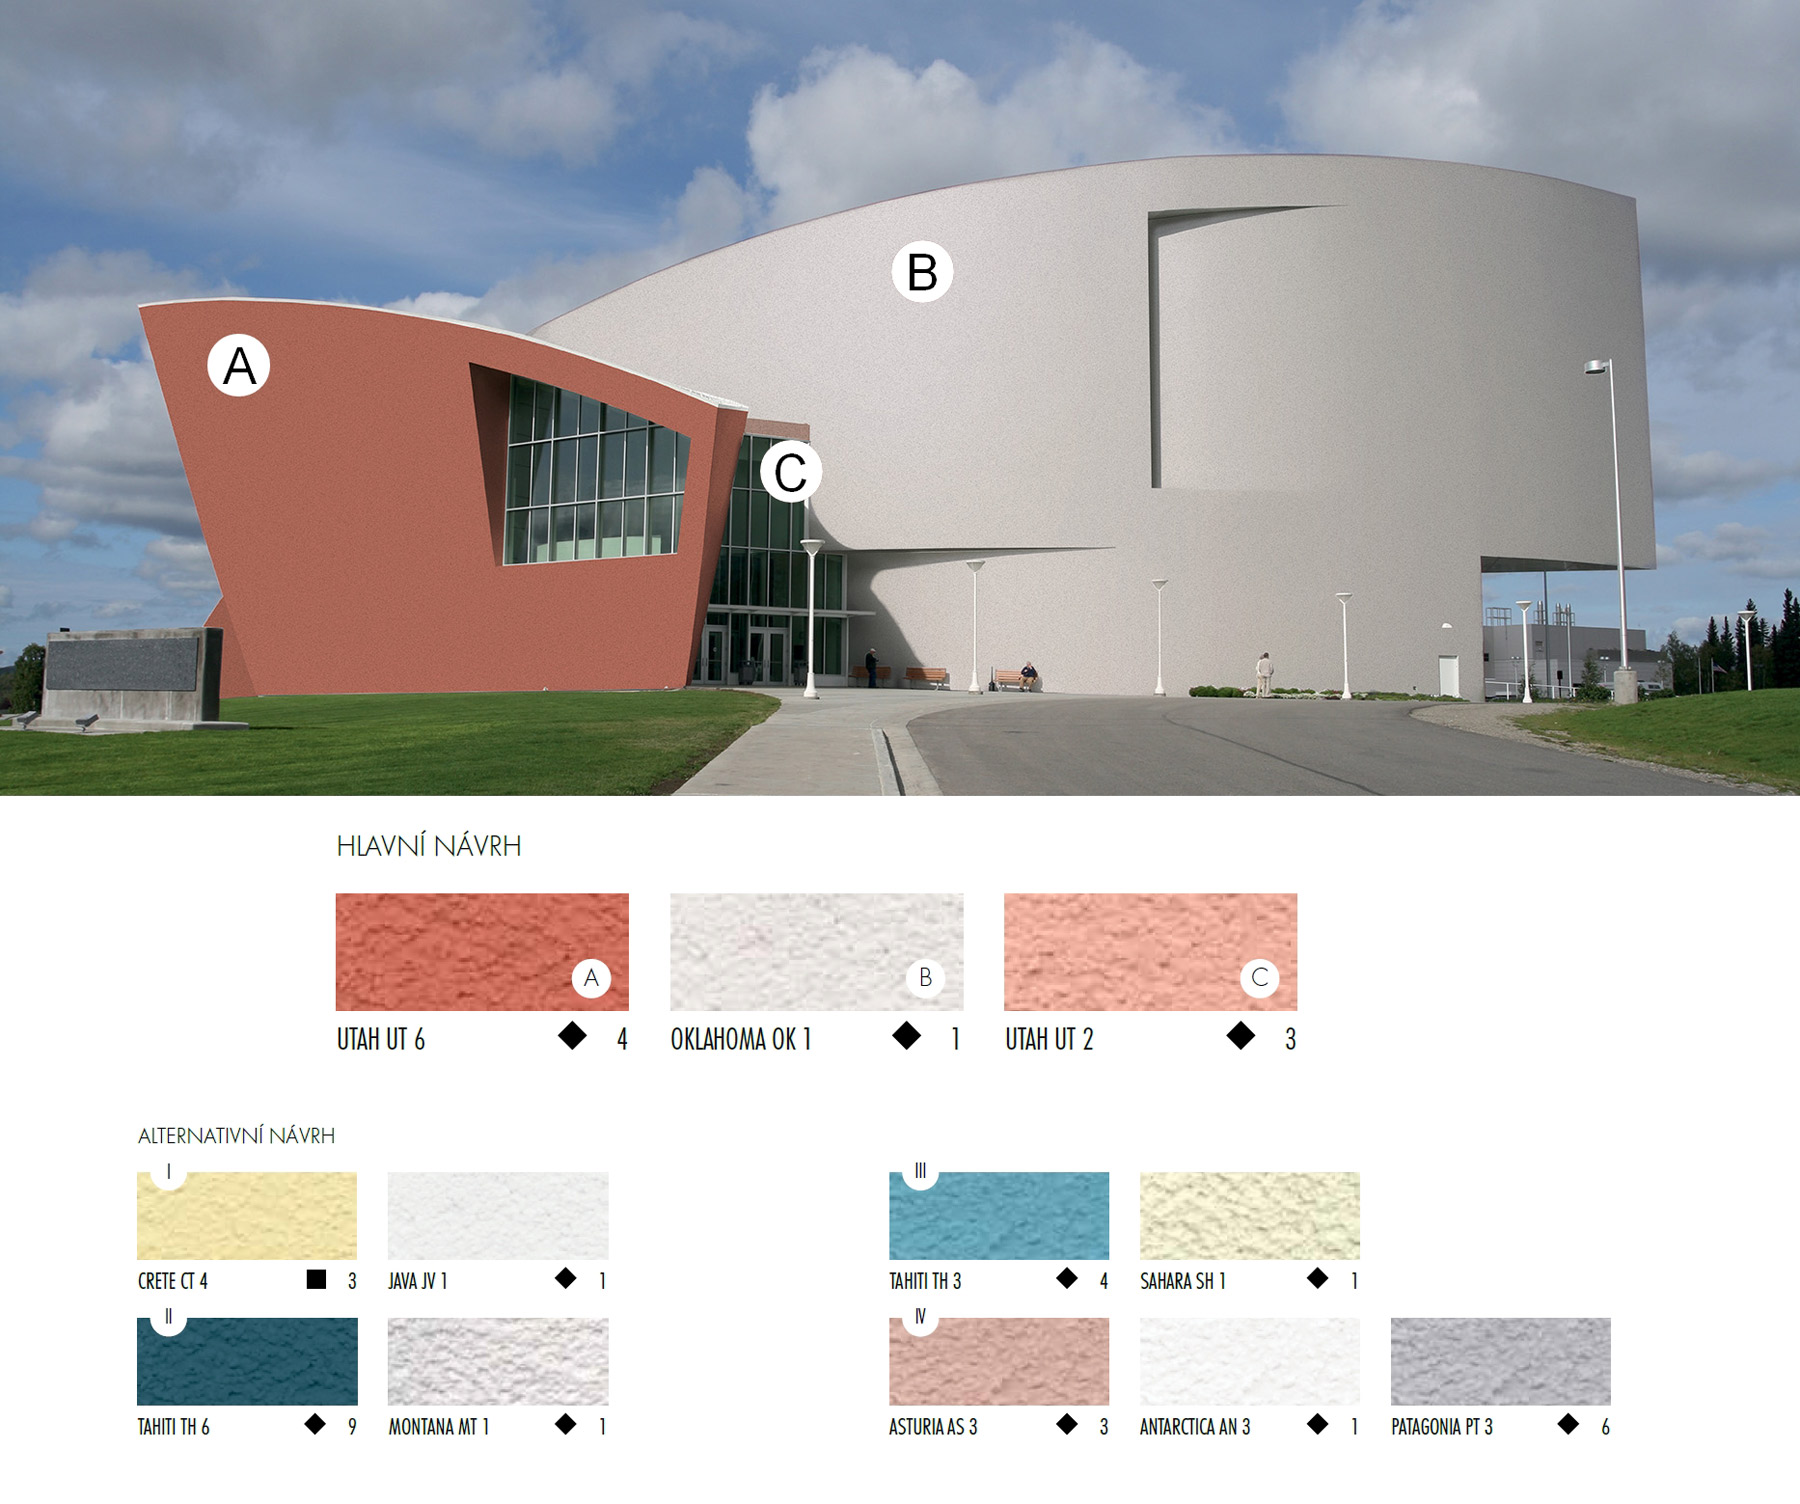 Možnosti sú dobre vidieť na riešení fasády budovy v štýle Kreatívne vlny. Hlavný návrh je kombináciou troch farebných typov (4, 1 a 3) jedného štýlu (Kreatívne vlny), rovnaký harmonický a pozitívny efekt je vidieť aj na alternatívnom návrhu číslo jedna, ktorý kombinuje dva štýly (Mestská krajina a Kreatívne vlny) a dva typy farieb (3 a 1).